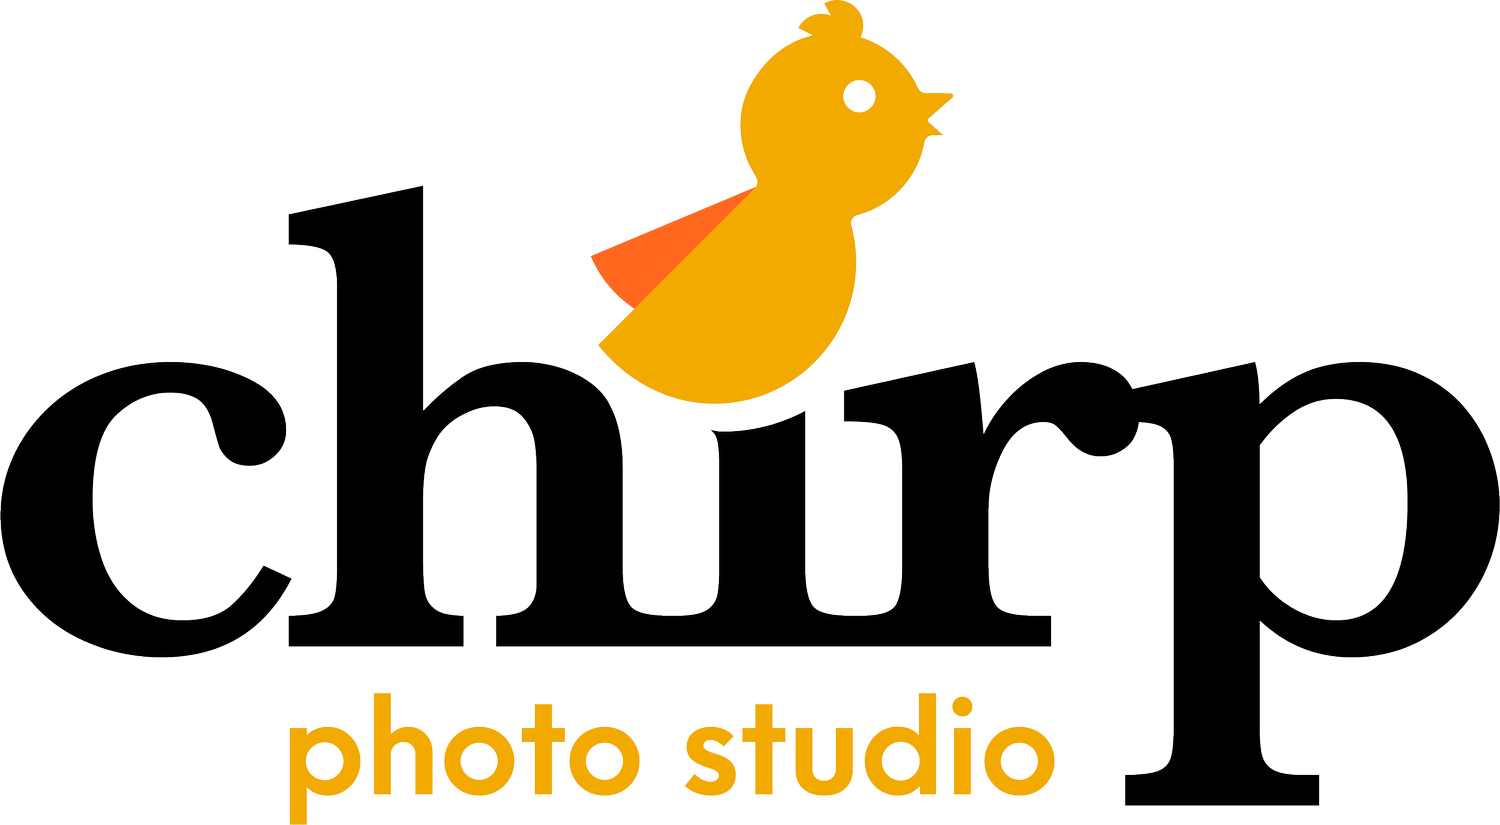 Chirp Photo Studio